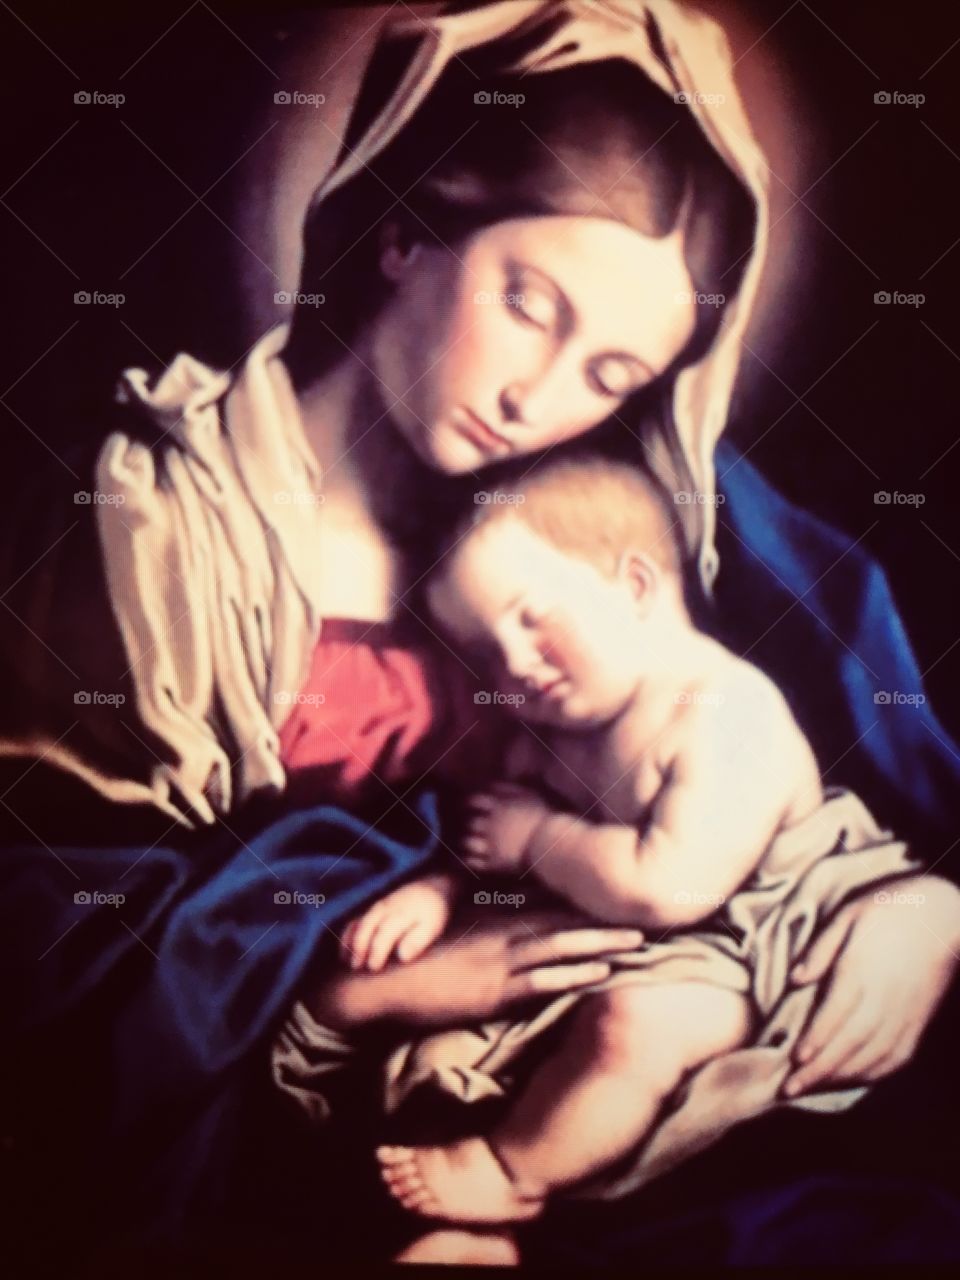 🙌🏻Correndo e Meditando com #NossaSenhora.
“Cuida de nós como cuidaste do #MeninoJesus, ó #Mãe querida. #Amém."
 🙏🏻
#Fé
#Santidade
#Catolicismo
#Jesus
#PorUmMundoDePaz